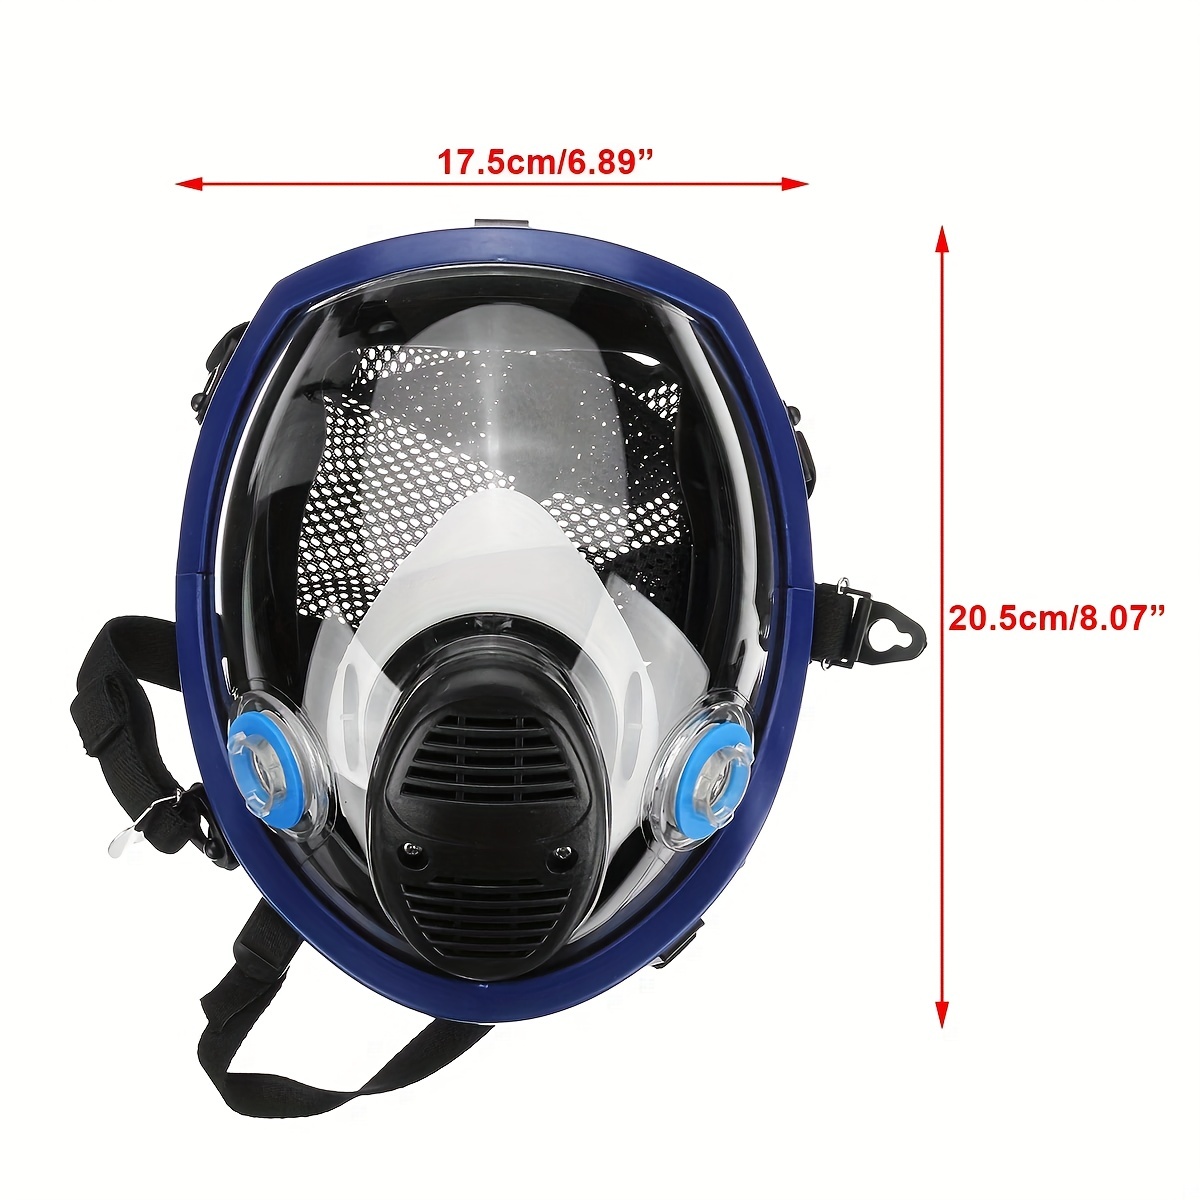 Masque À Gaz Chimique 6800 Respirateur Anti poussière 15/17 - Temu